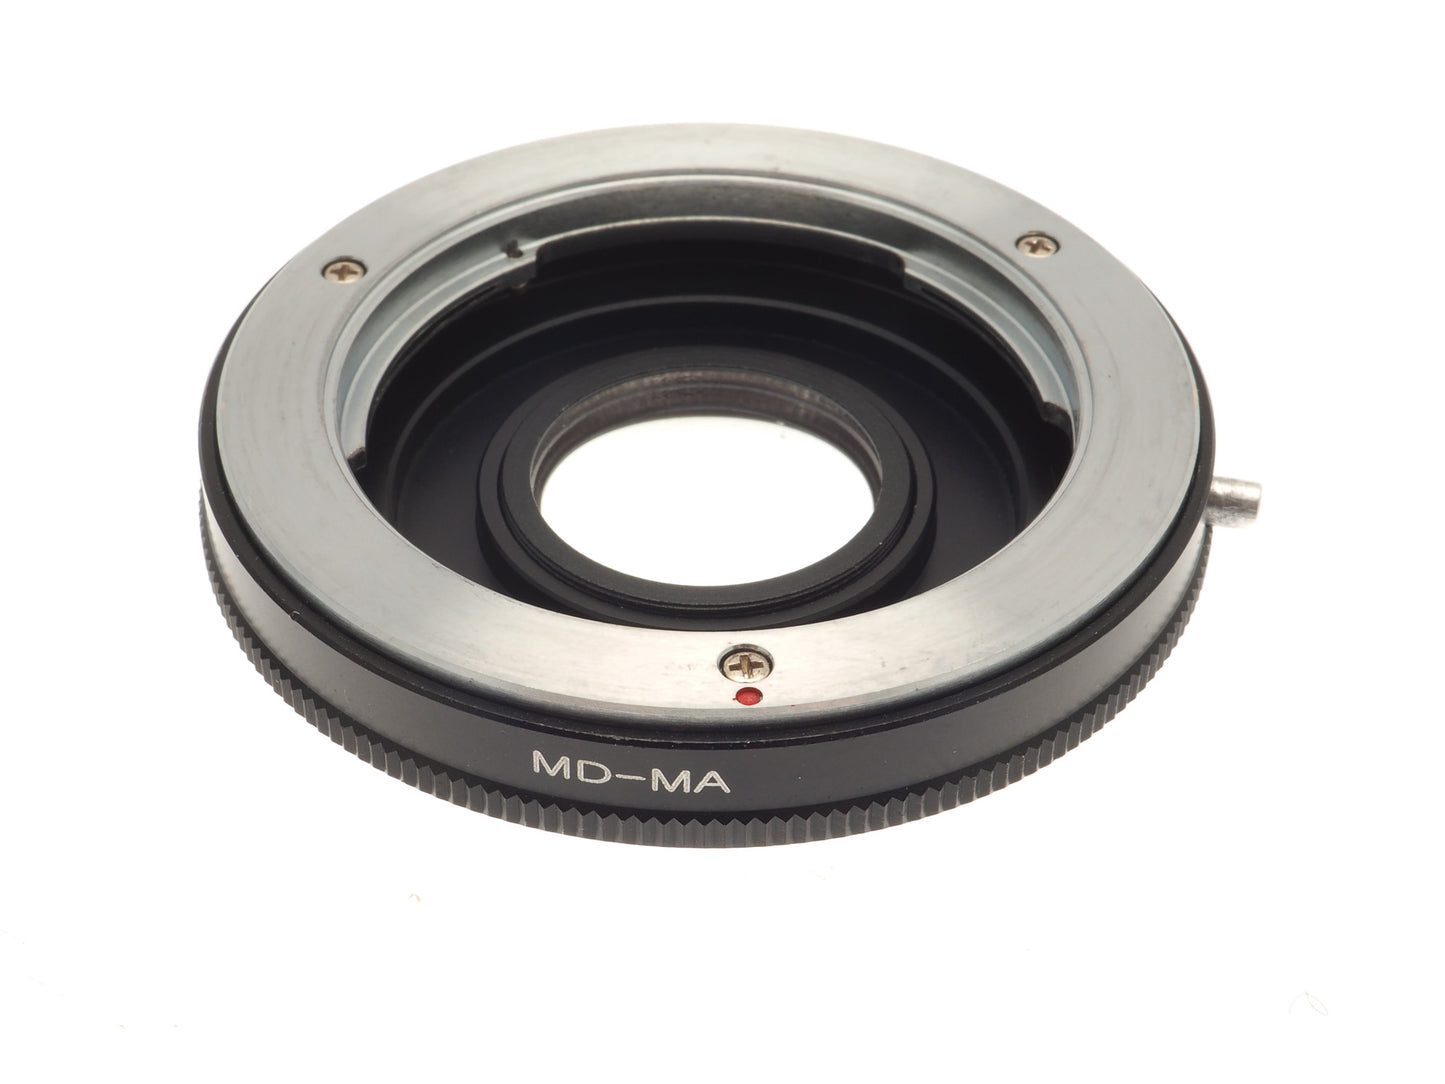 Generic Minolta MD - Minolta AF (MD-AF) Adapter - Lens Adapter